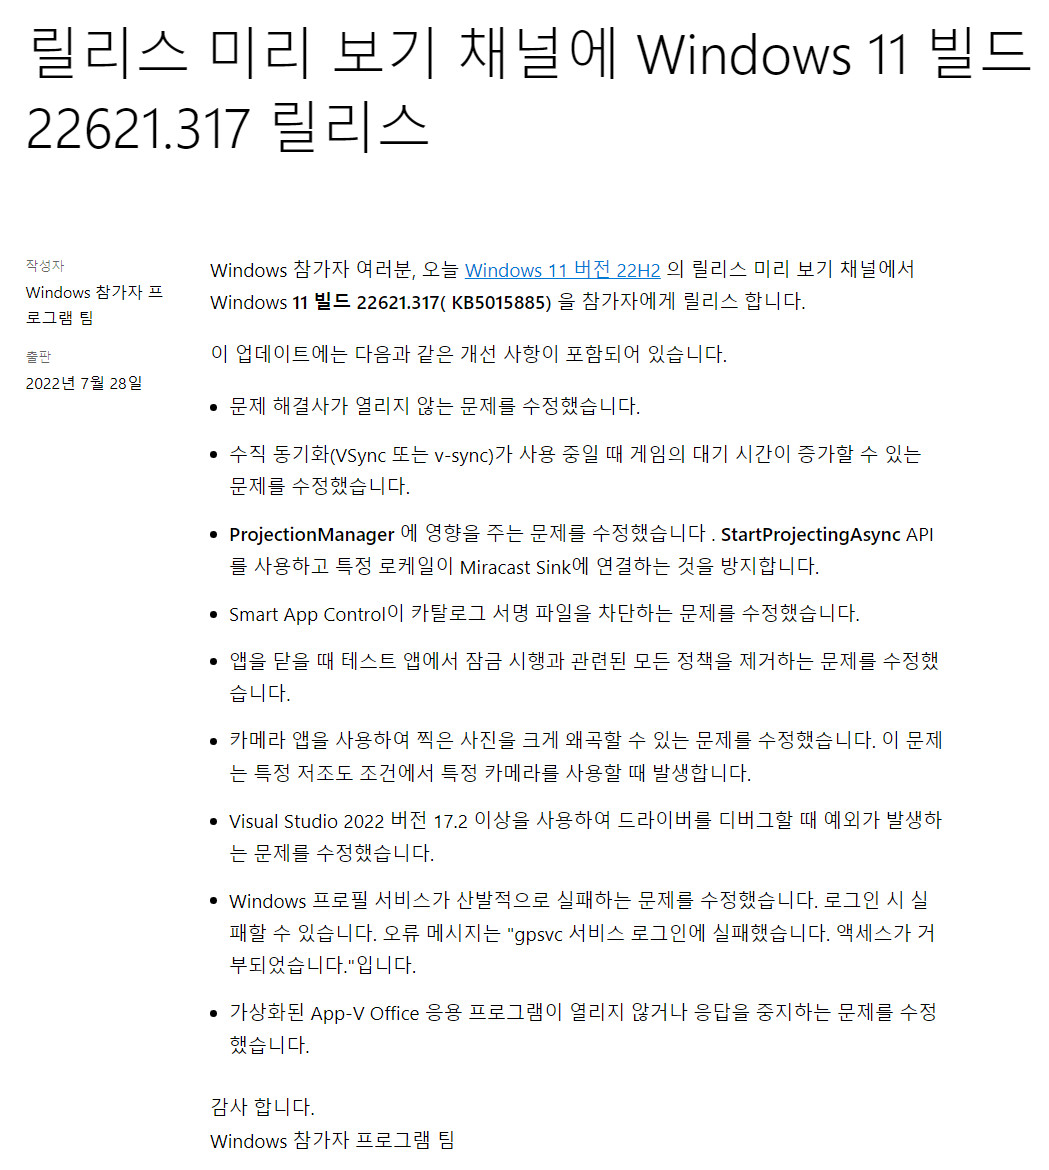 2022-07-29 금요일 - 릴리스 프리뷰 채널 - Windows 11 버전 22H2, 빌드 22621.317 - 누적 업데이트 KB5015885 - MS 블로그 - 크롬 번역 2022-07-29_061723.jpg